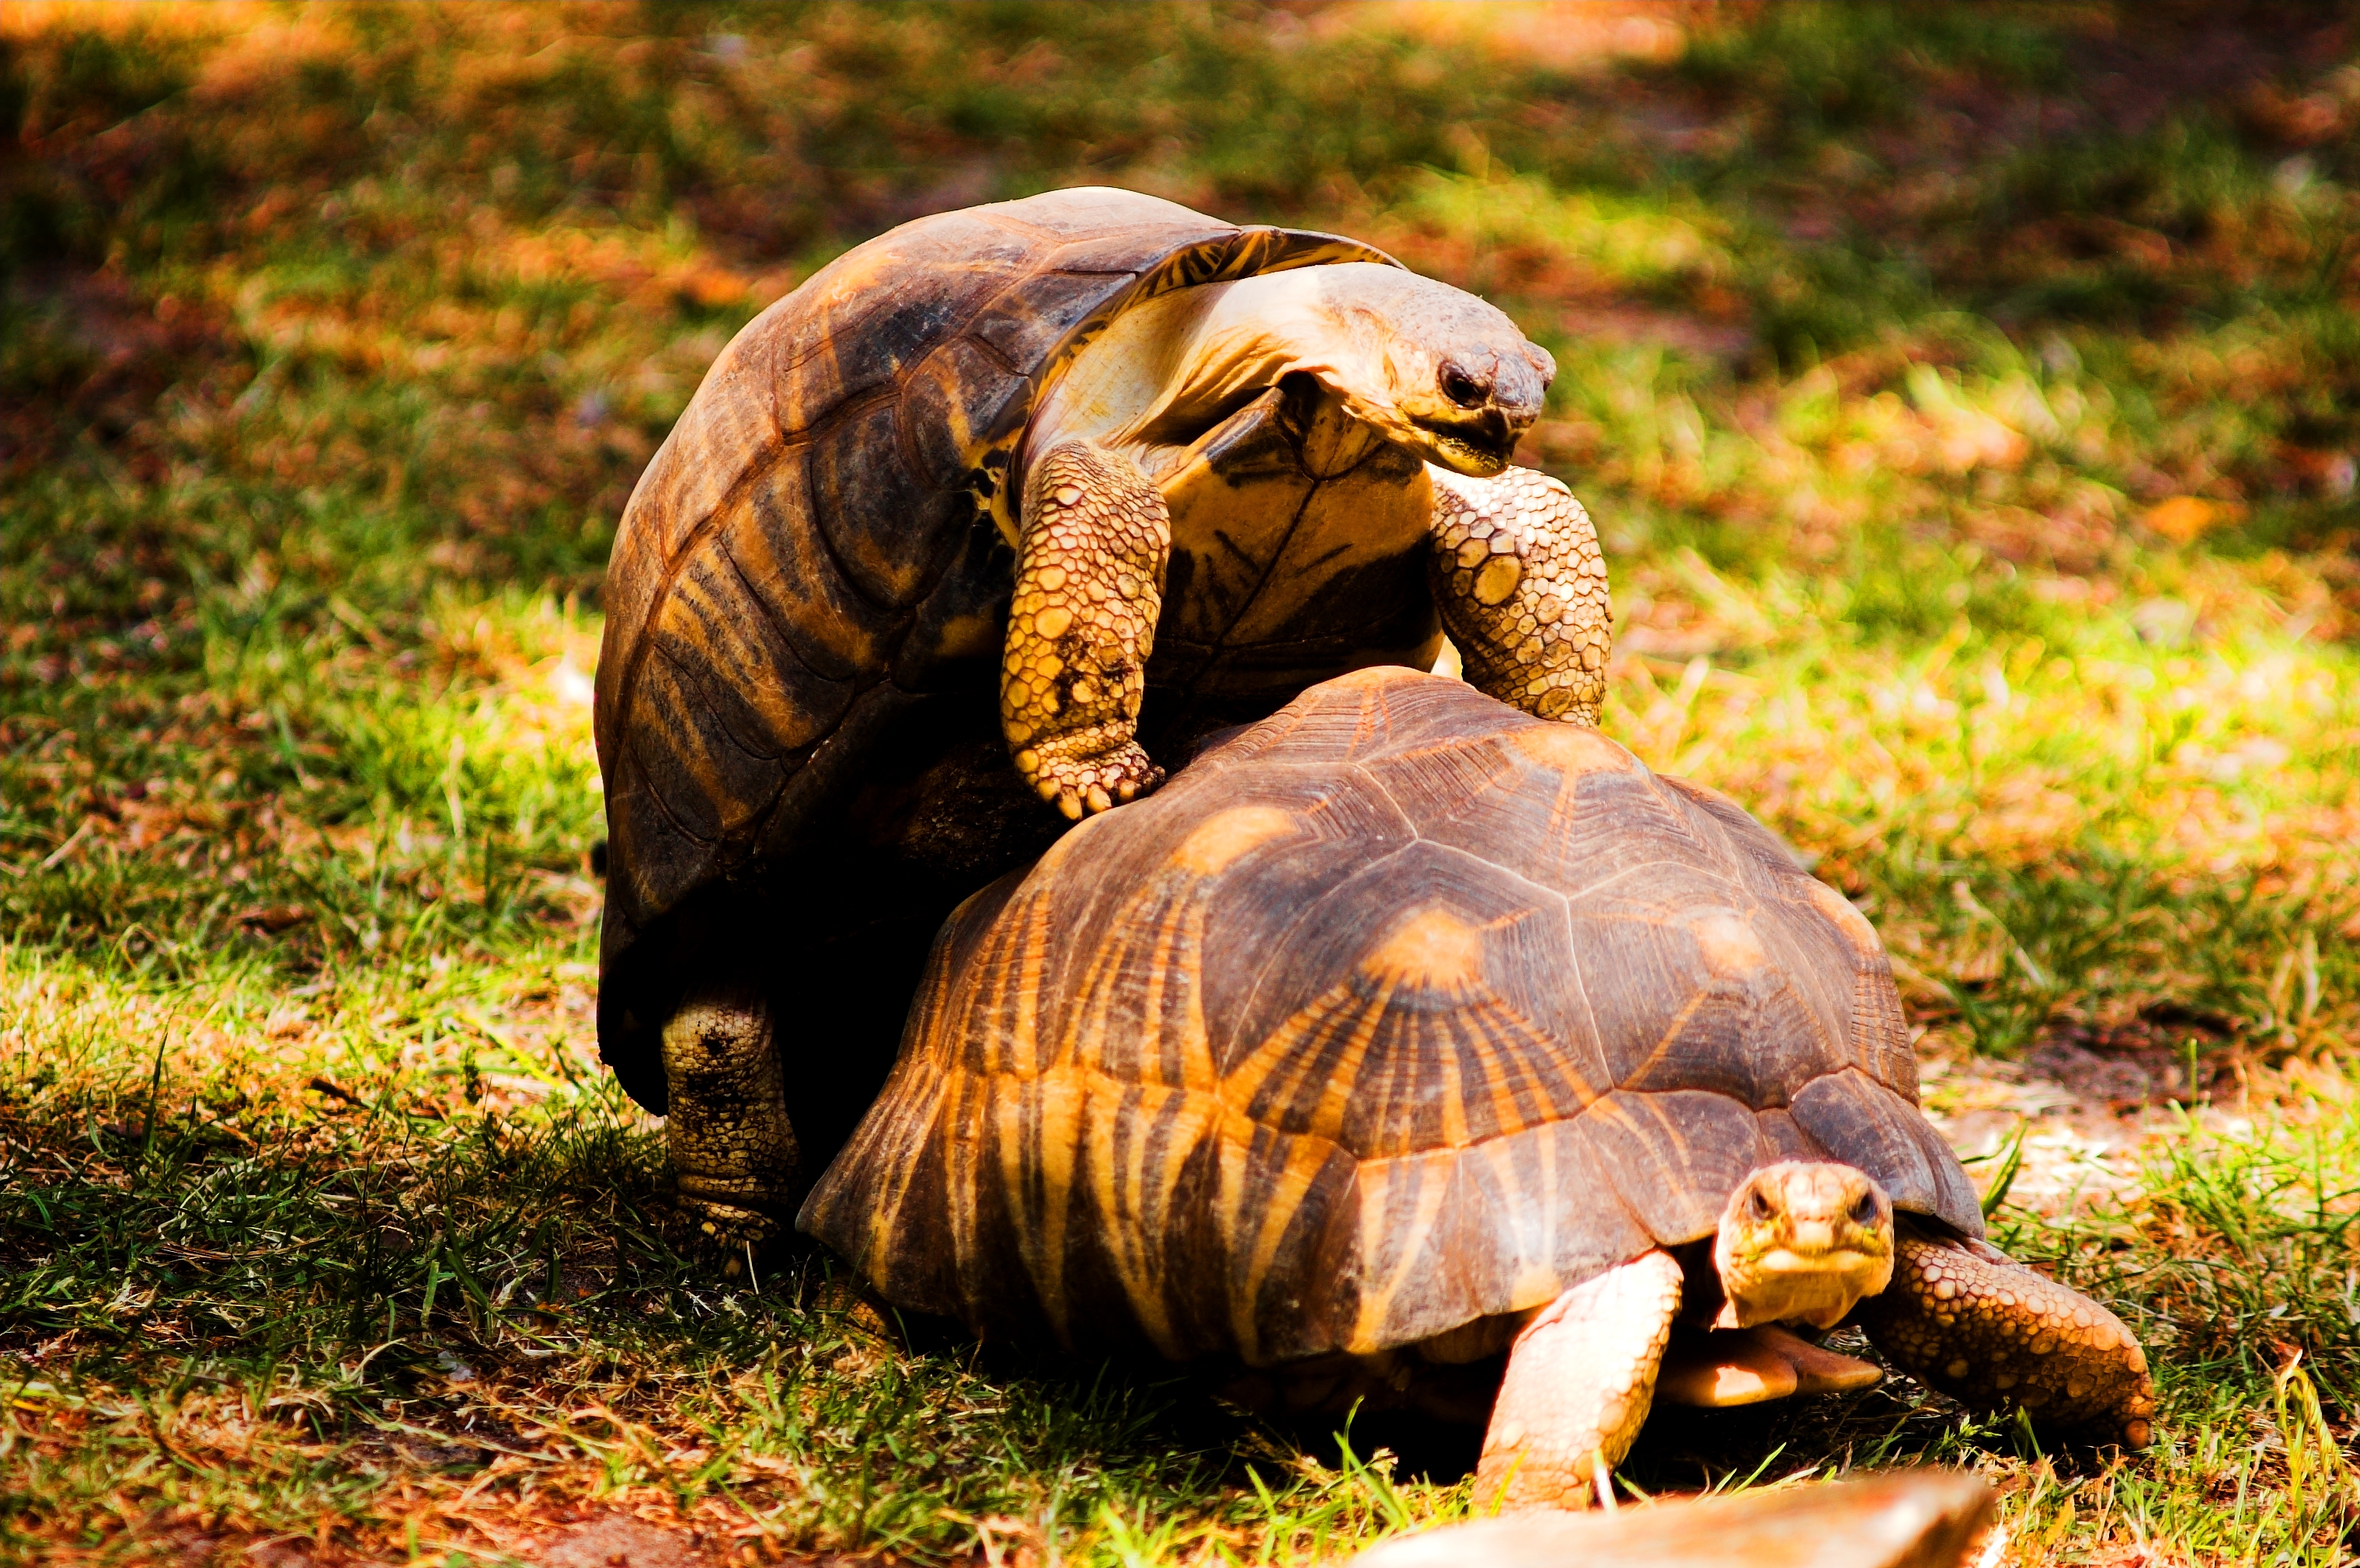 Turtles_mating.jpg